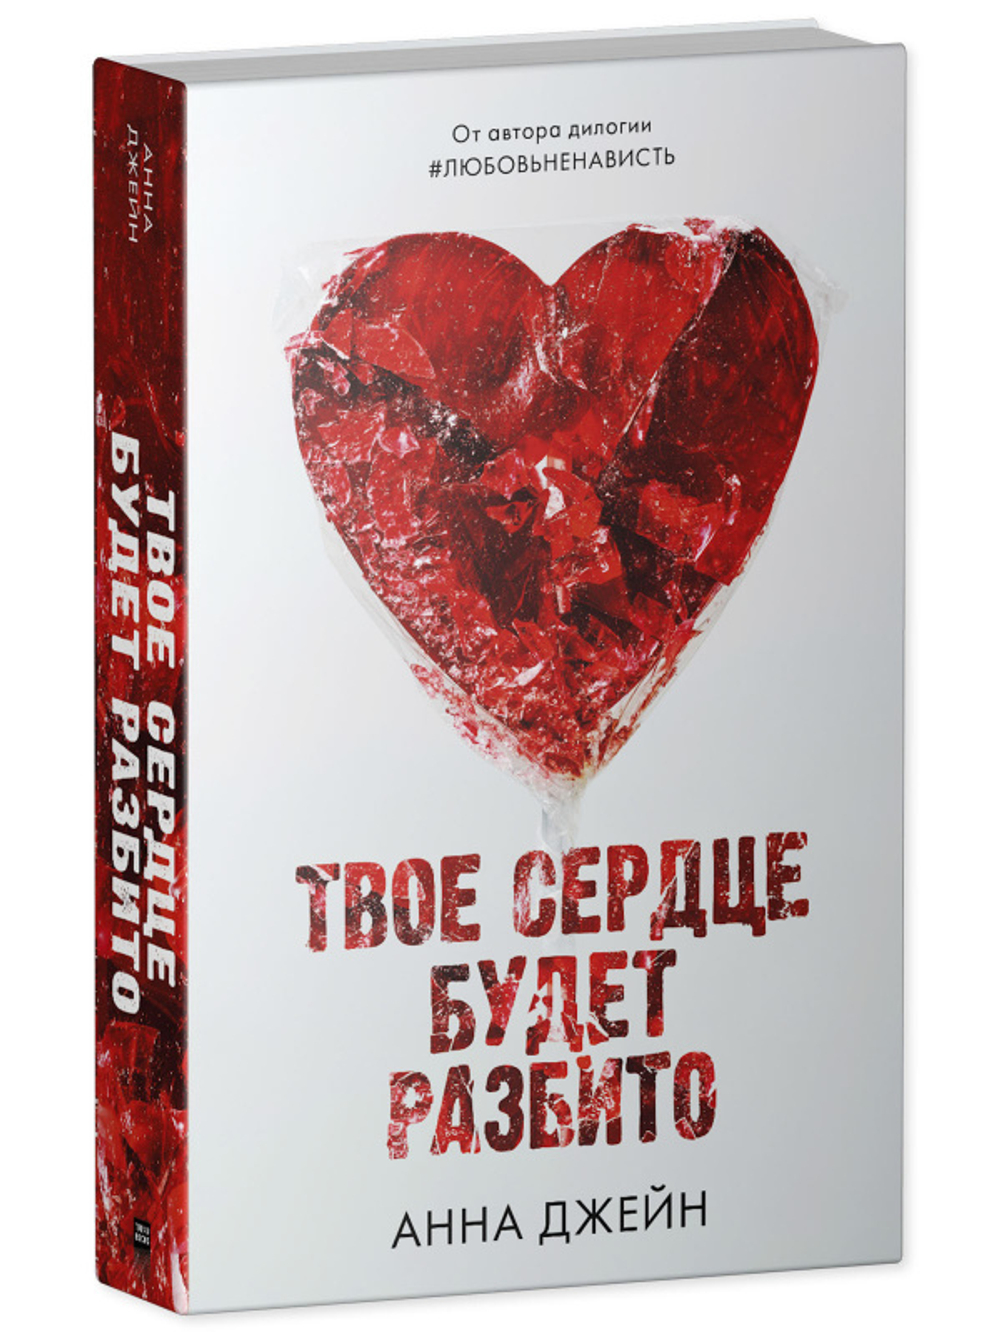 Комплект книг Анны Джейн «По осколкам твоего сердца», «Твое сердце будет разбито»